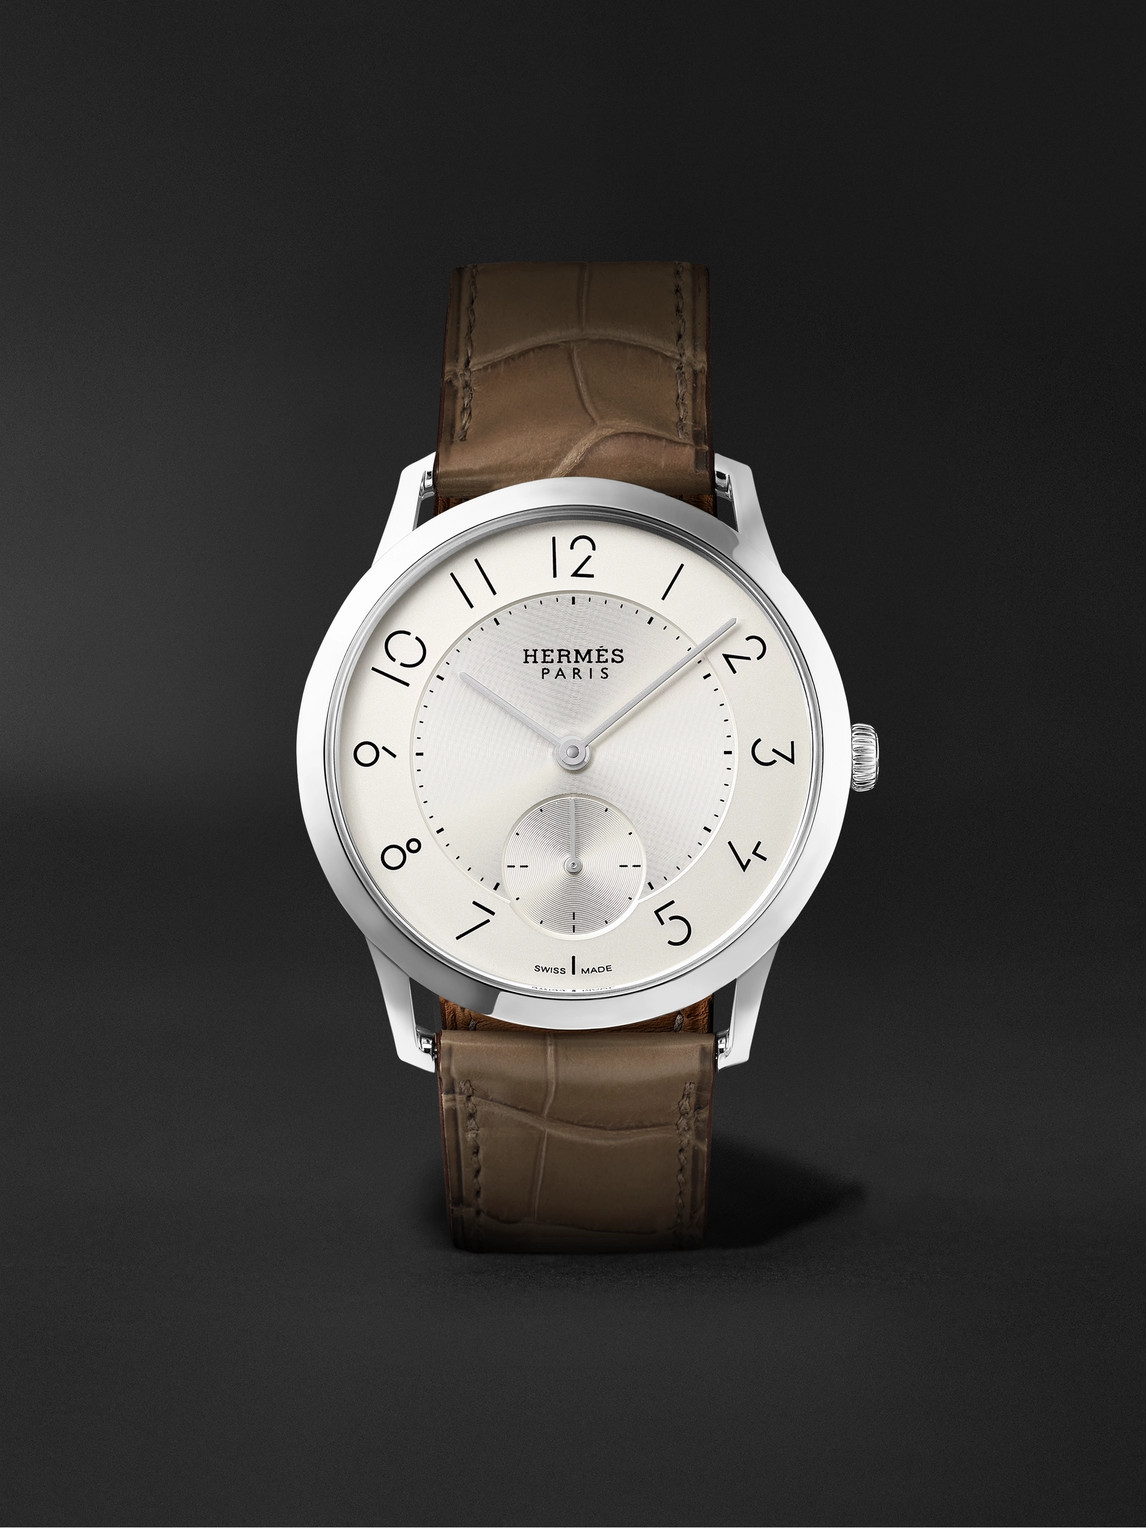 Slim d'Hermès Acier Automatic 39.5mm Stainless Steel and Alligator Watch, Ref. No. W045266WW00